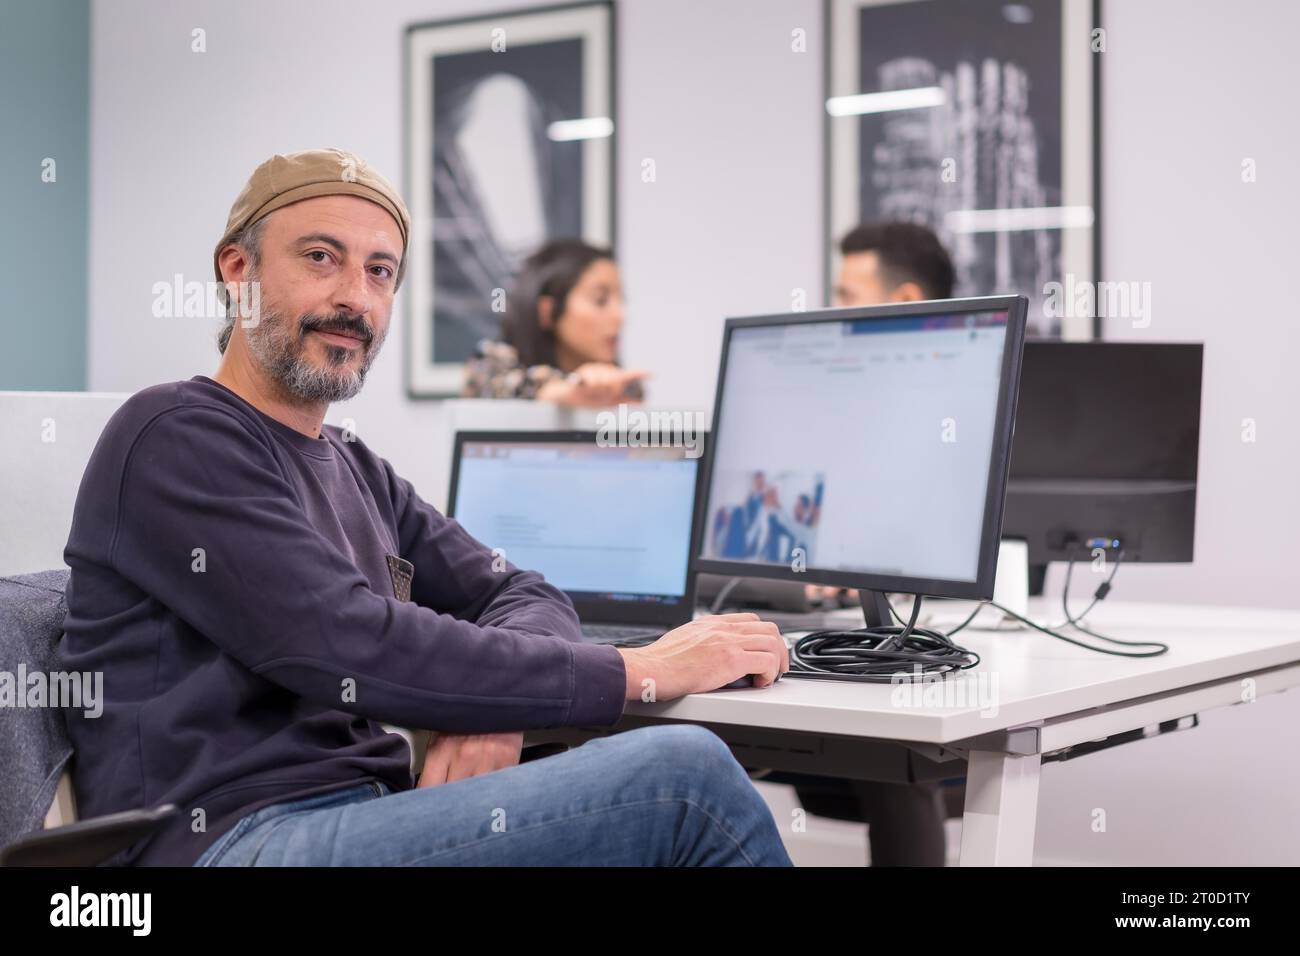 Portarit d'un homme fier souriant à la caméra tout en travaillant dans un bureau de co-working moderne Banque D'Images